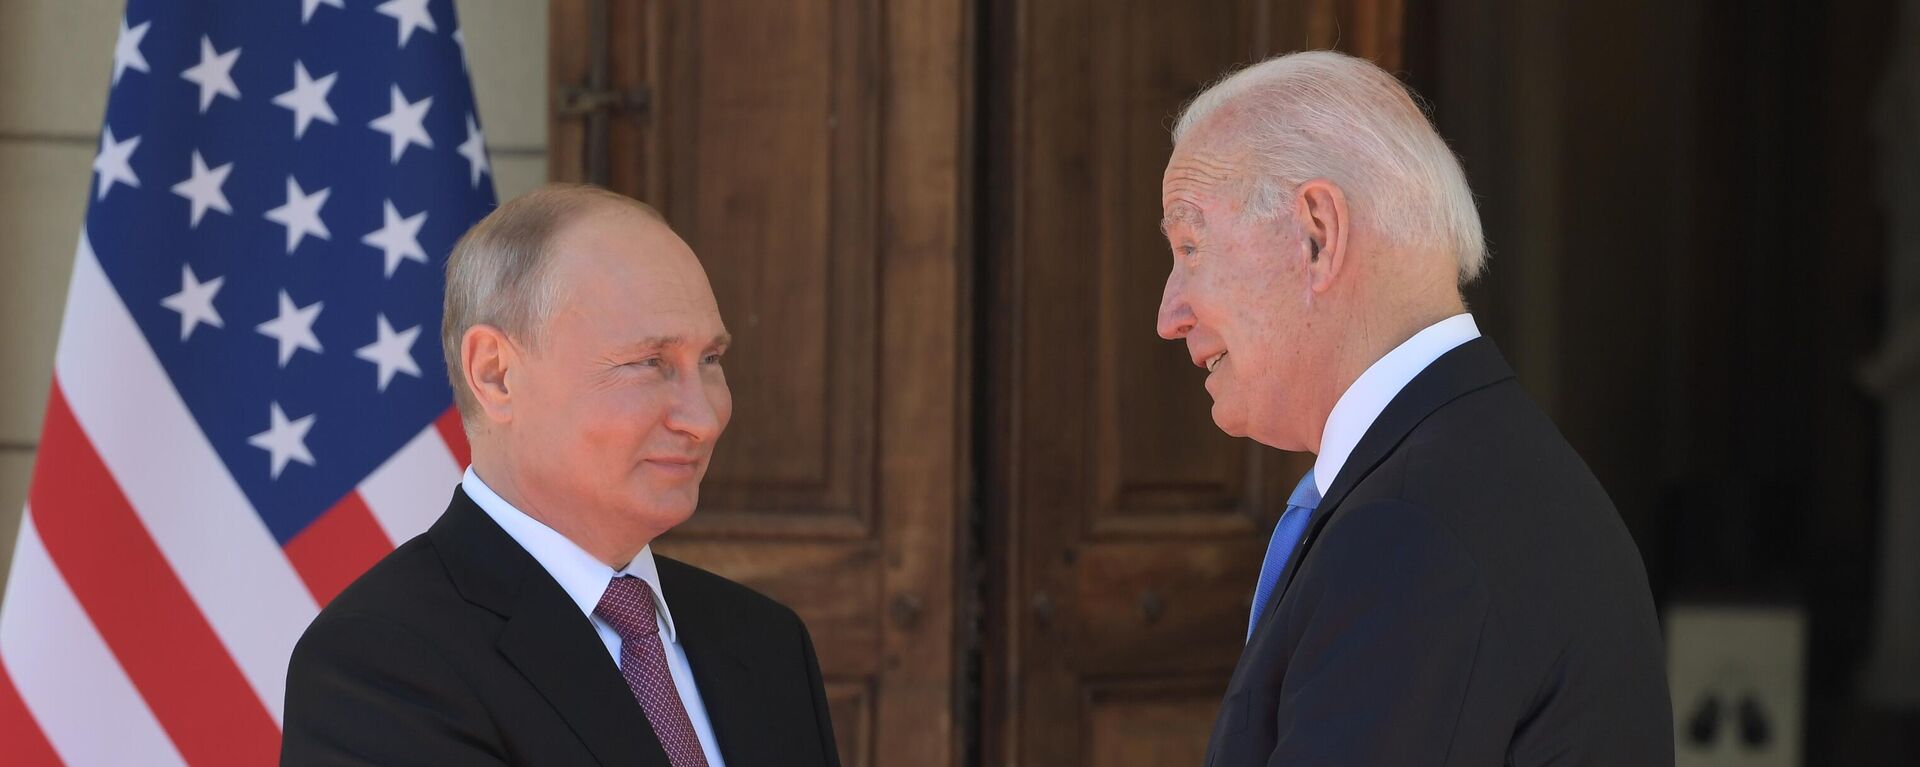  Krievijas un ASV prezidentu Vladimira Putina un Džo Baidena tikšanās - Sputnik Latvija, 1920, 07.12.2021